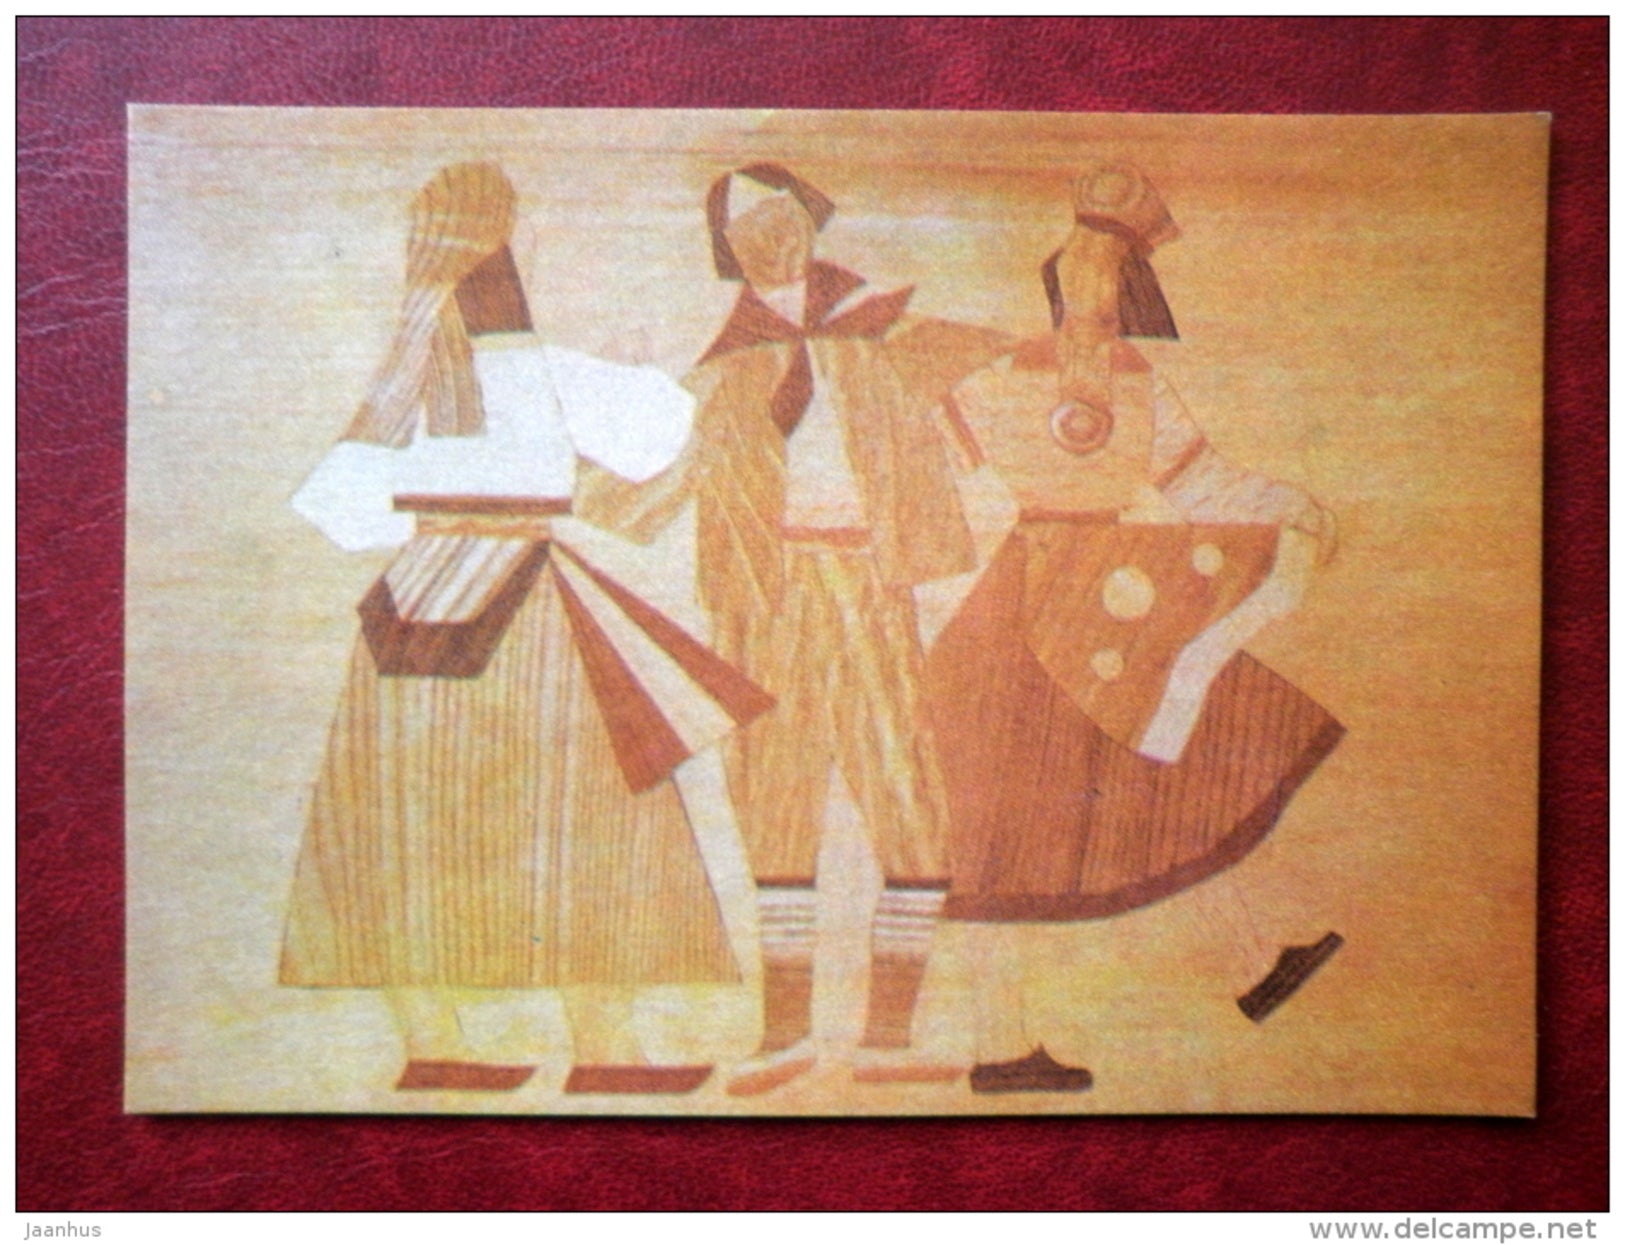 Folk Dancers - inlay by K. Küla - Juvenile Artists - 1970 - Estonia USSR - unused - JH Postcards